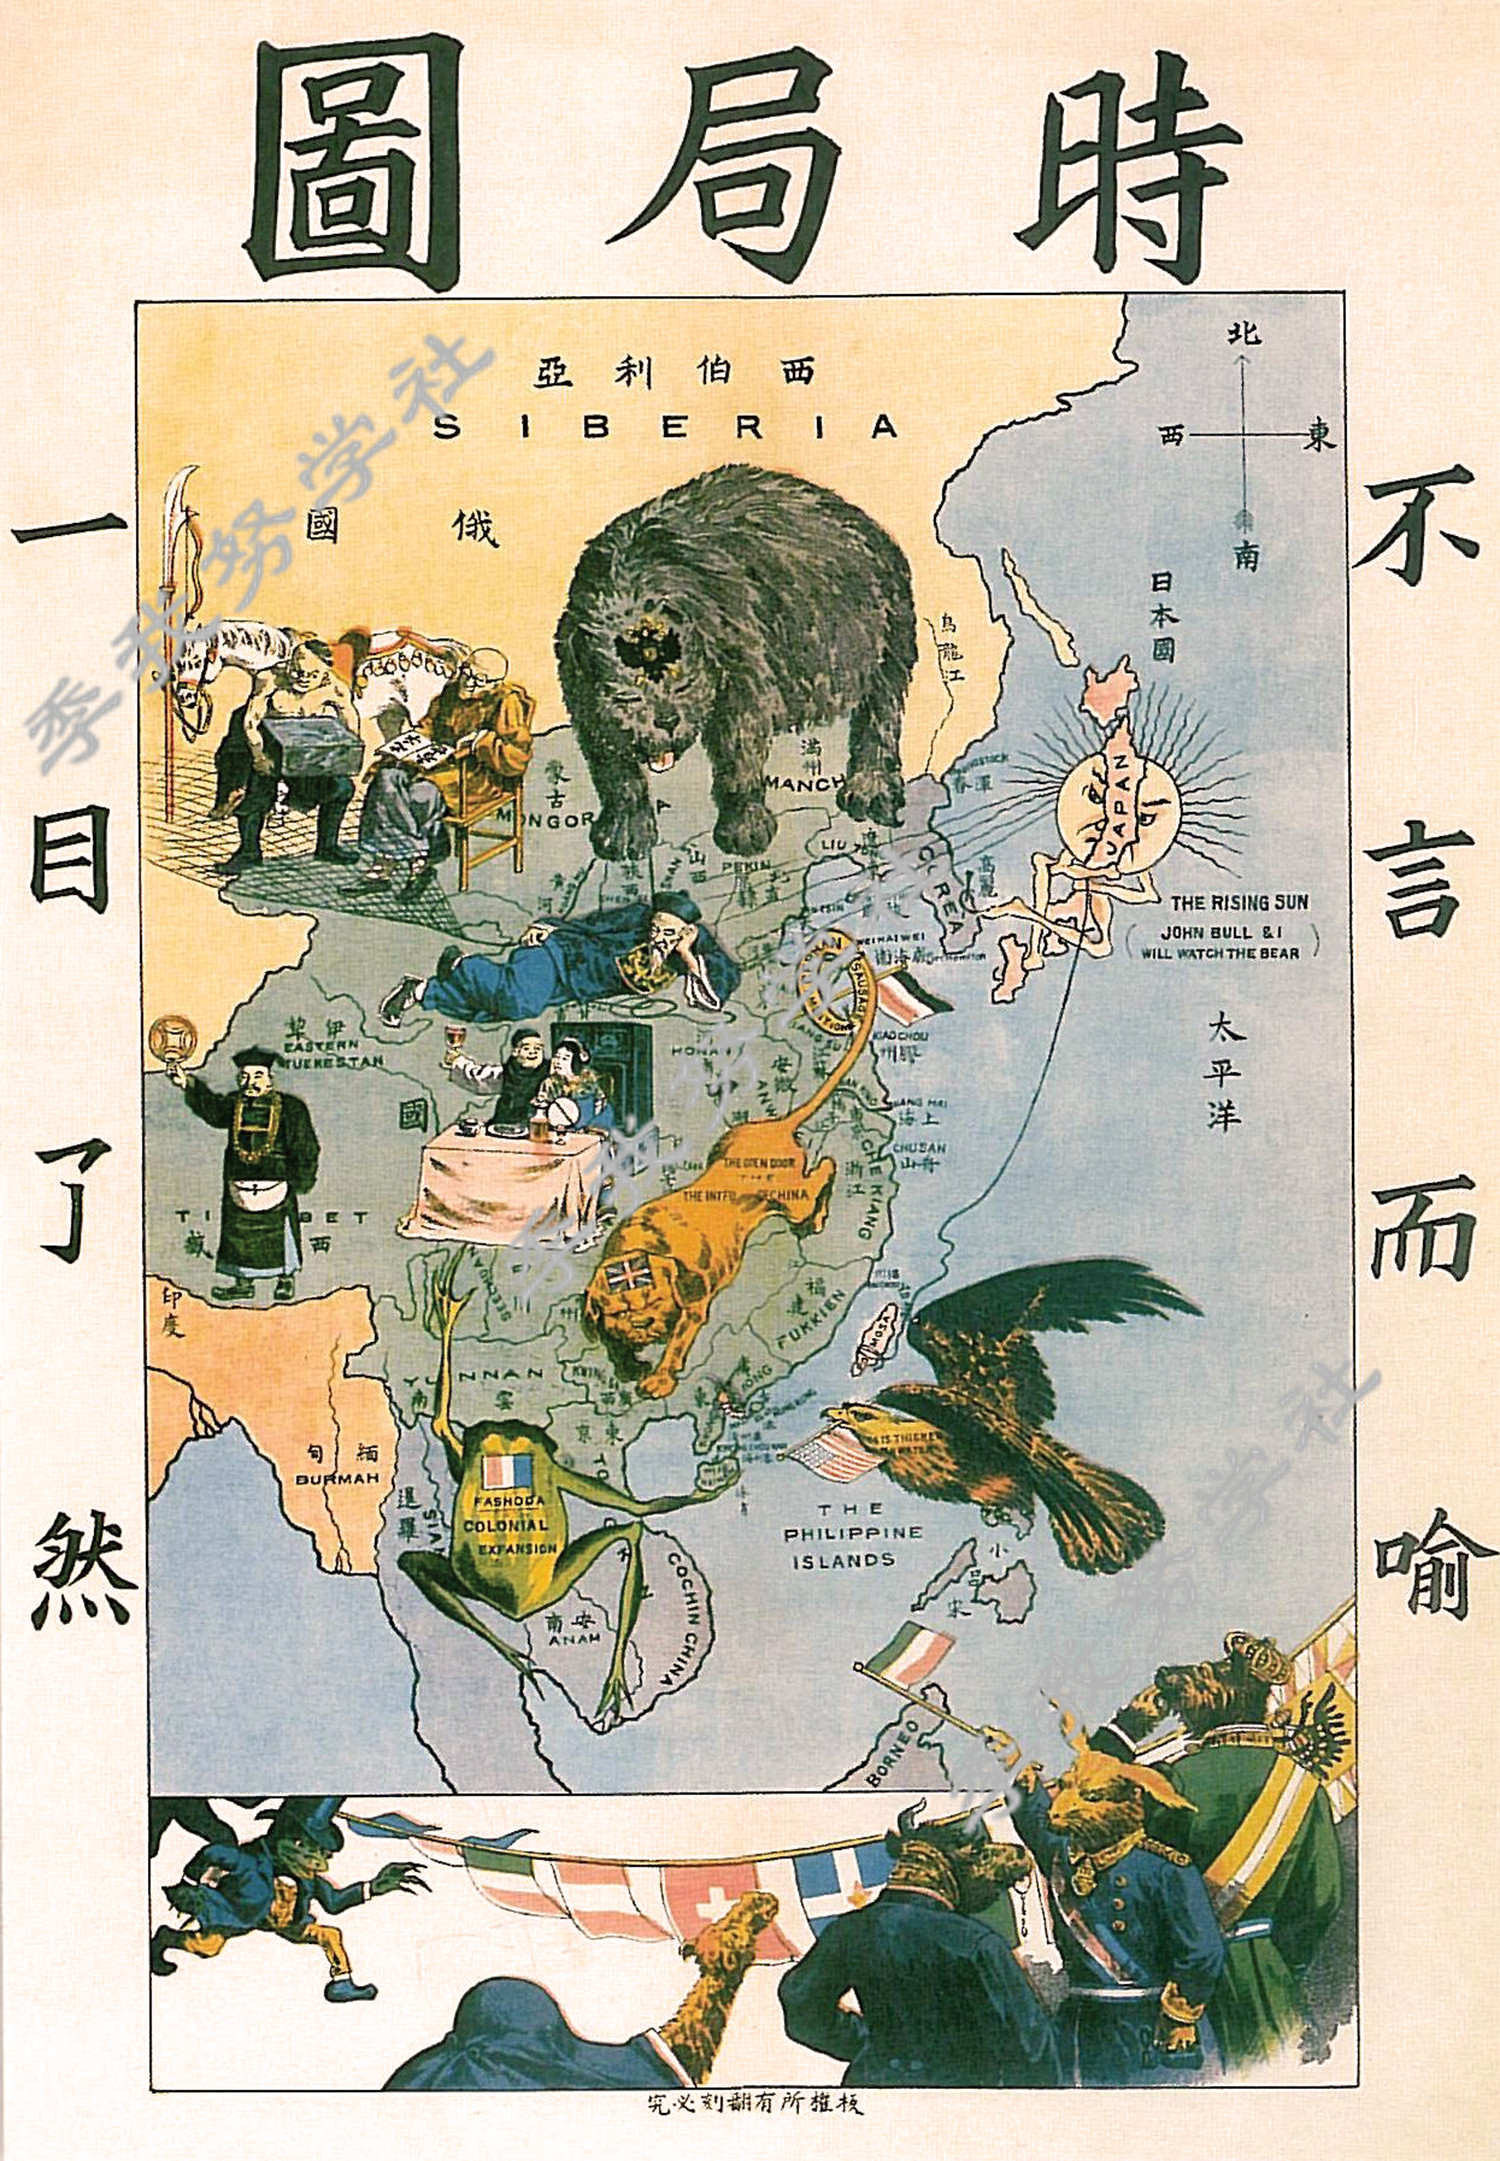 20世纪初的西方漫画:西方列强纷纷制造"黄祸论"企图瓜分中国